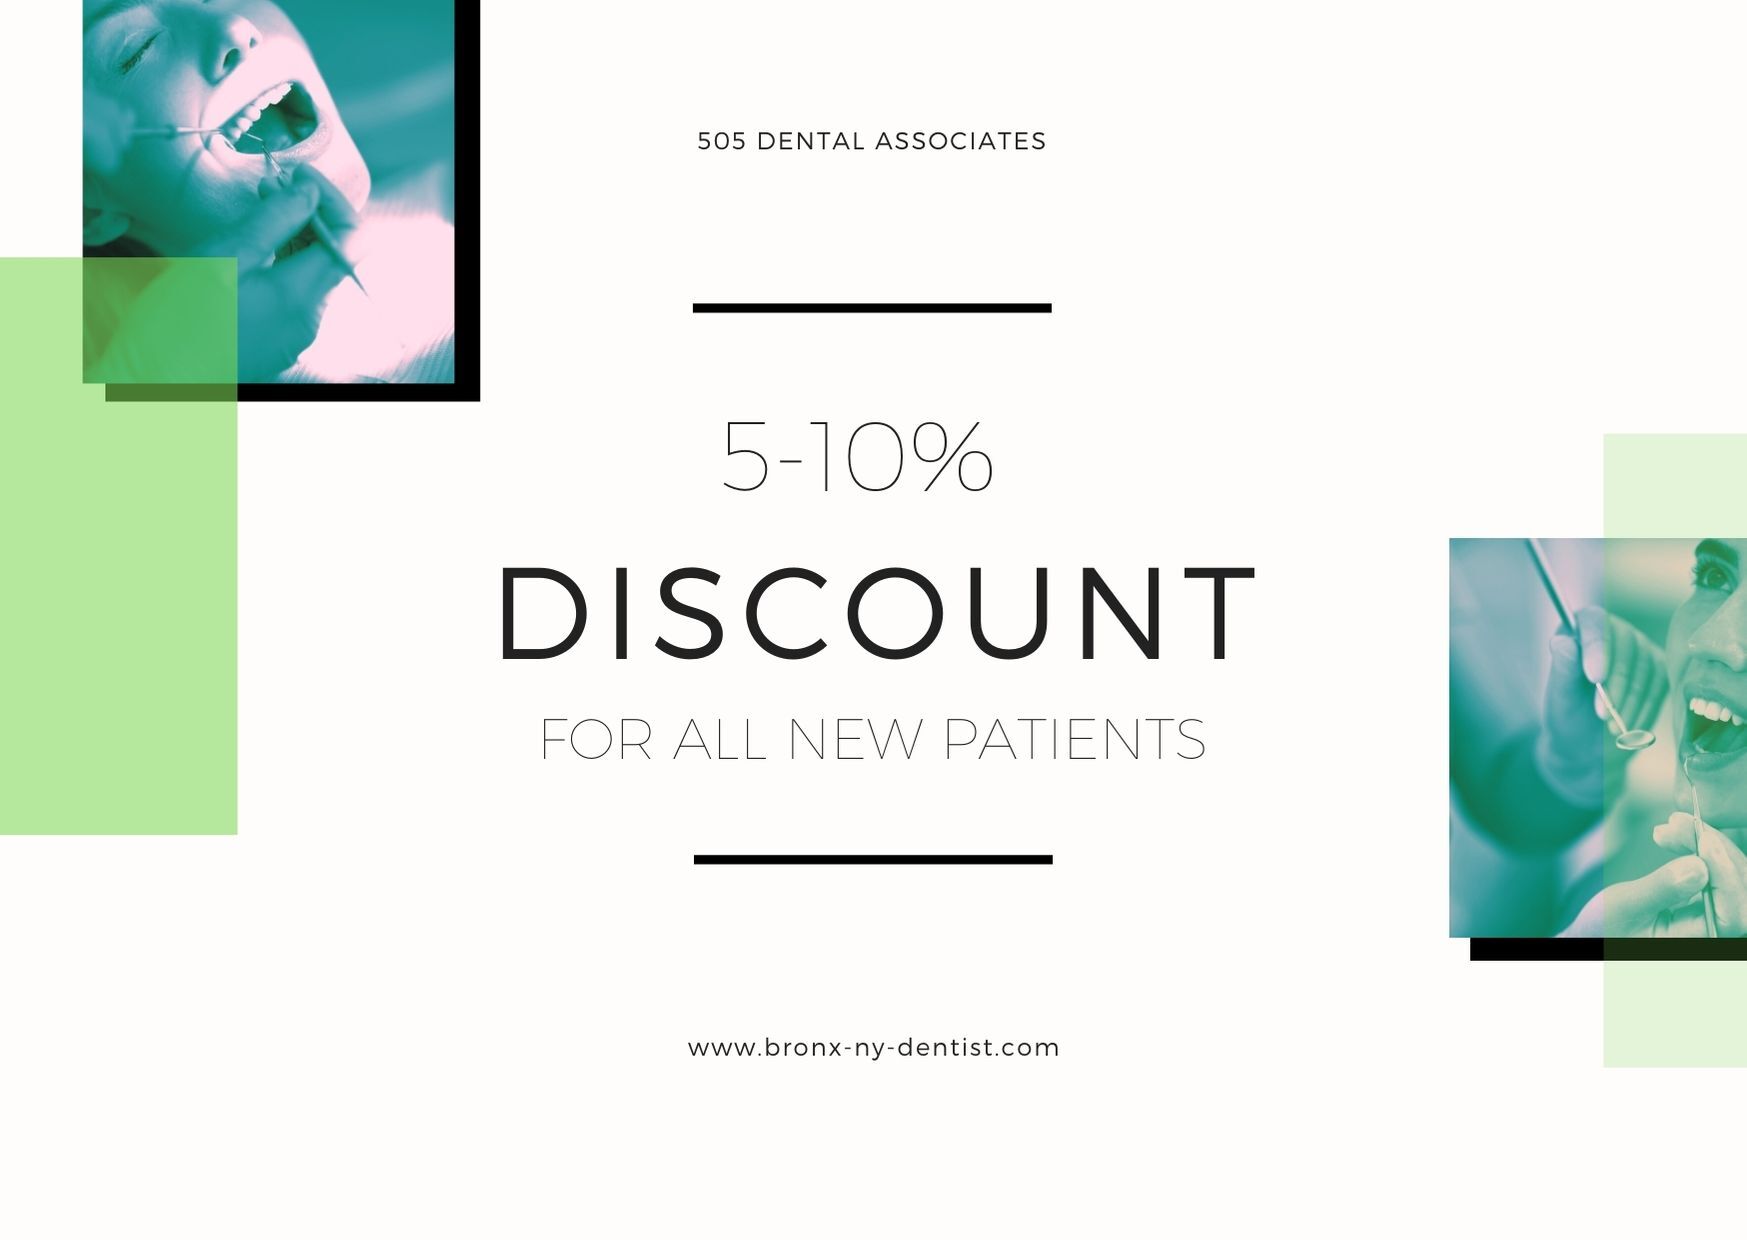 505 Dental Associates offers a discount